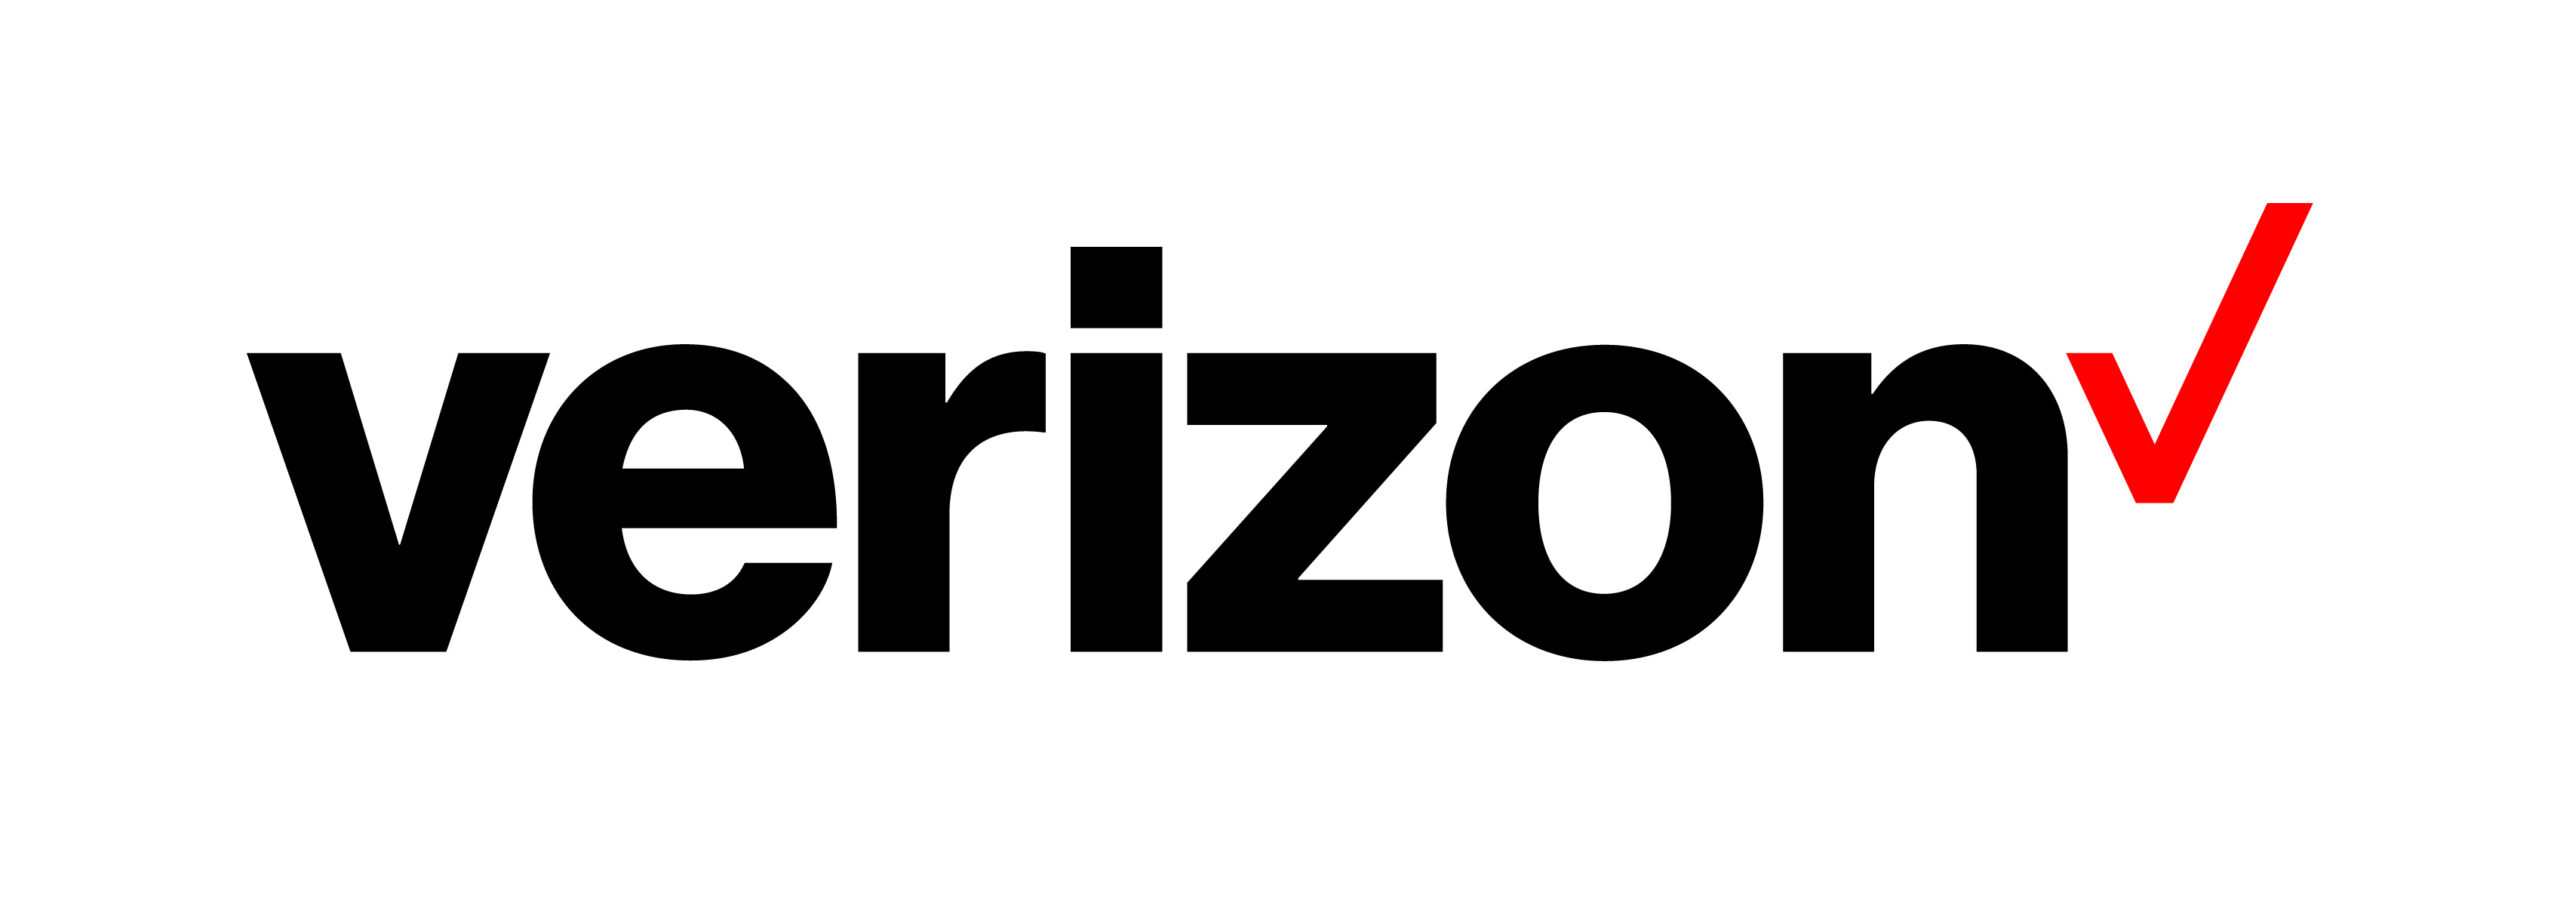 New Verizon Logo (November 2015)